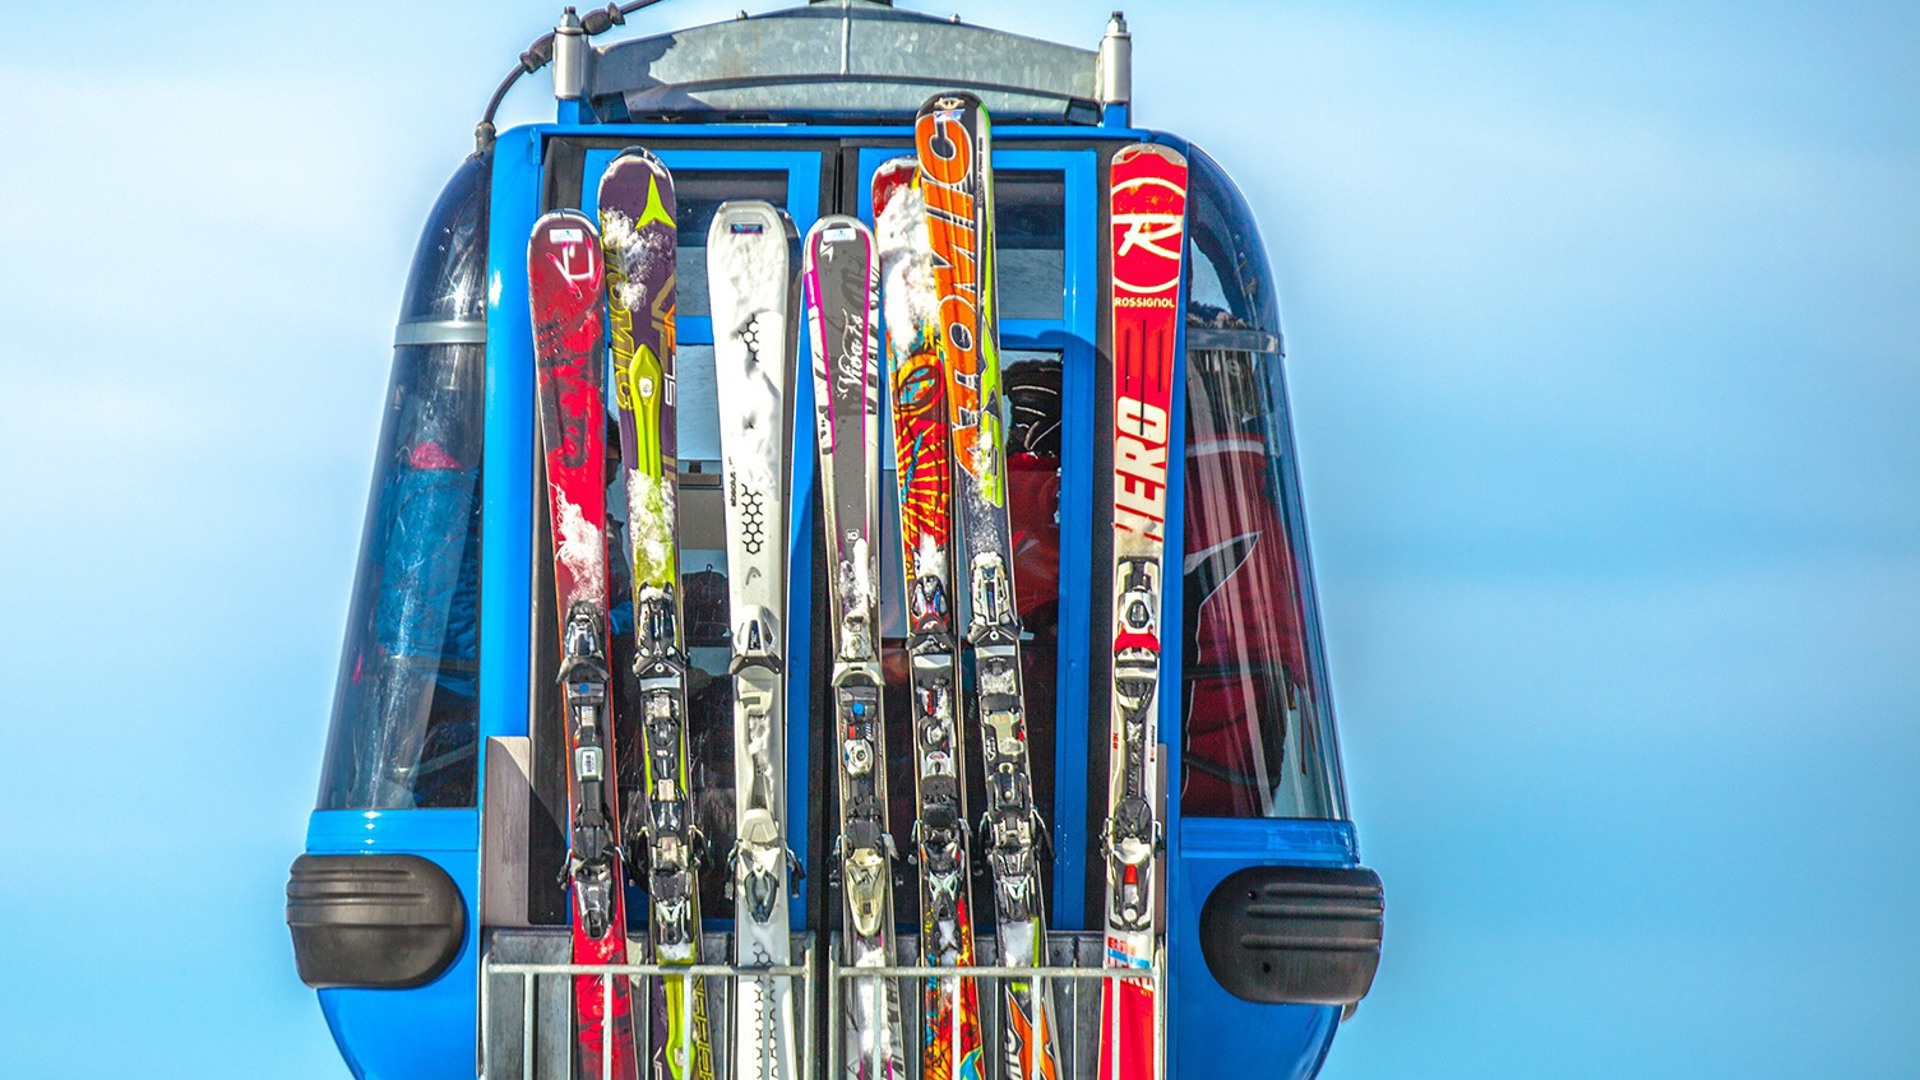 Bon plan : louez votre matériel de ski juste à côté du complexe